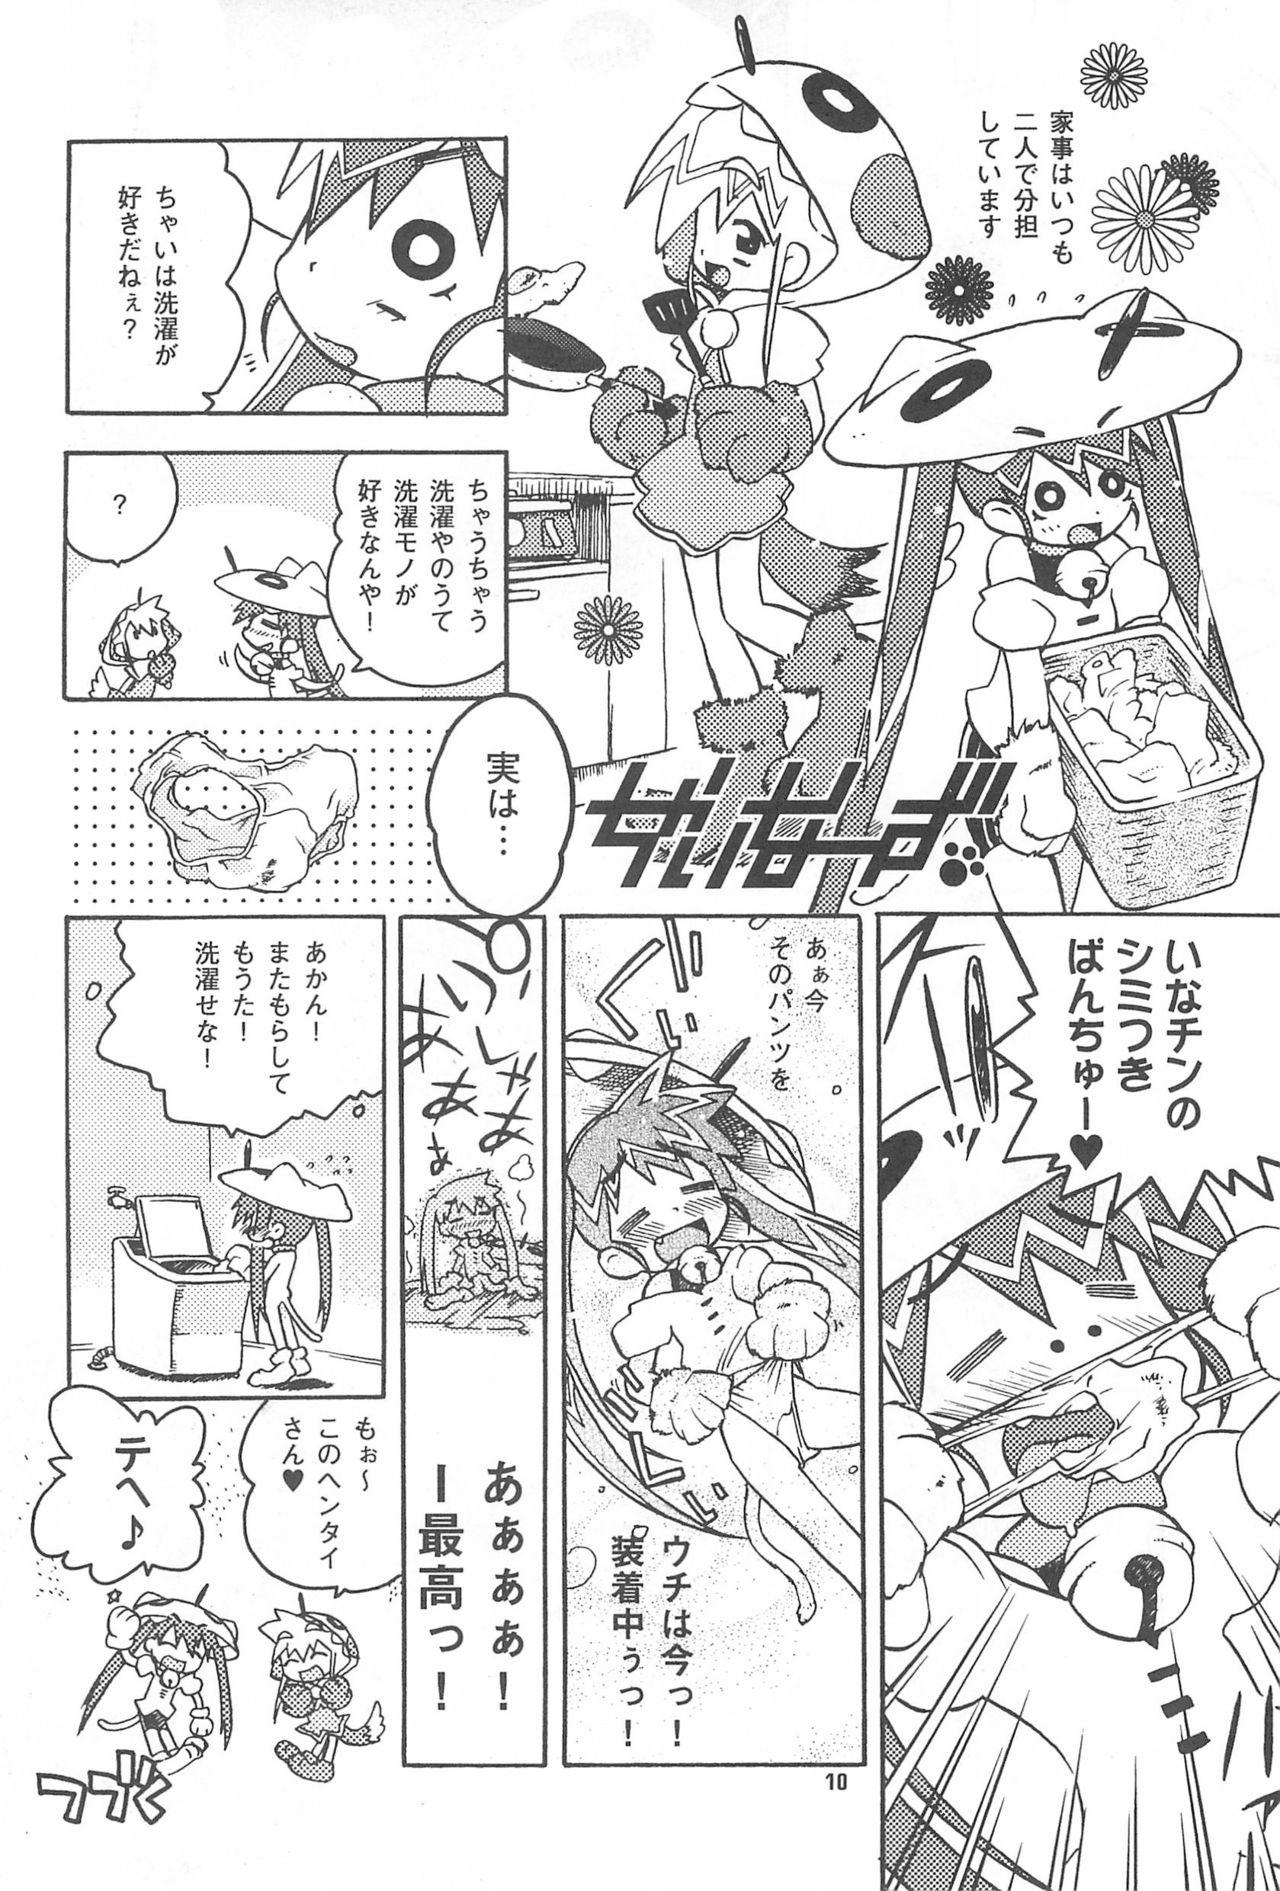 Amateurs Gone Rokusai+2 Consolo - Page 10